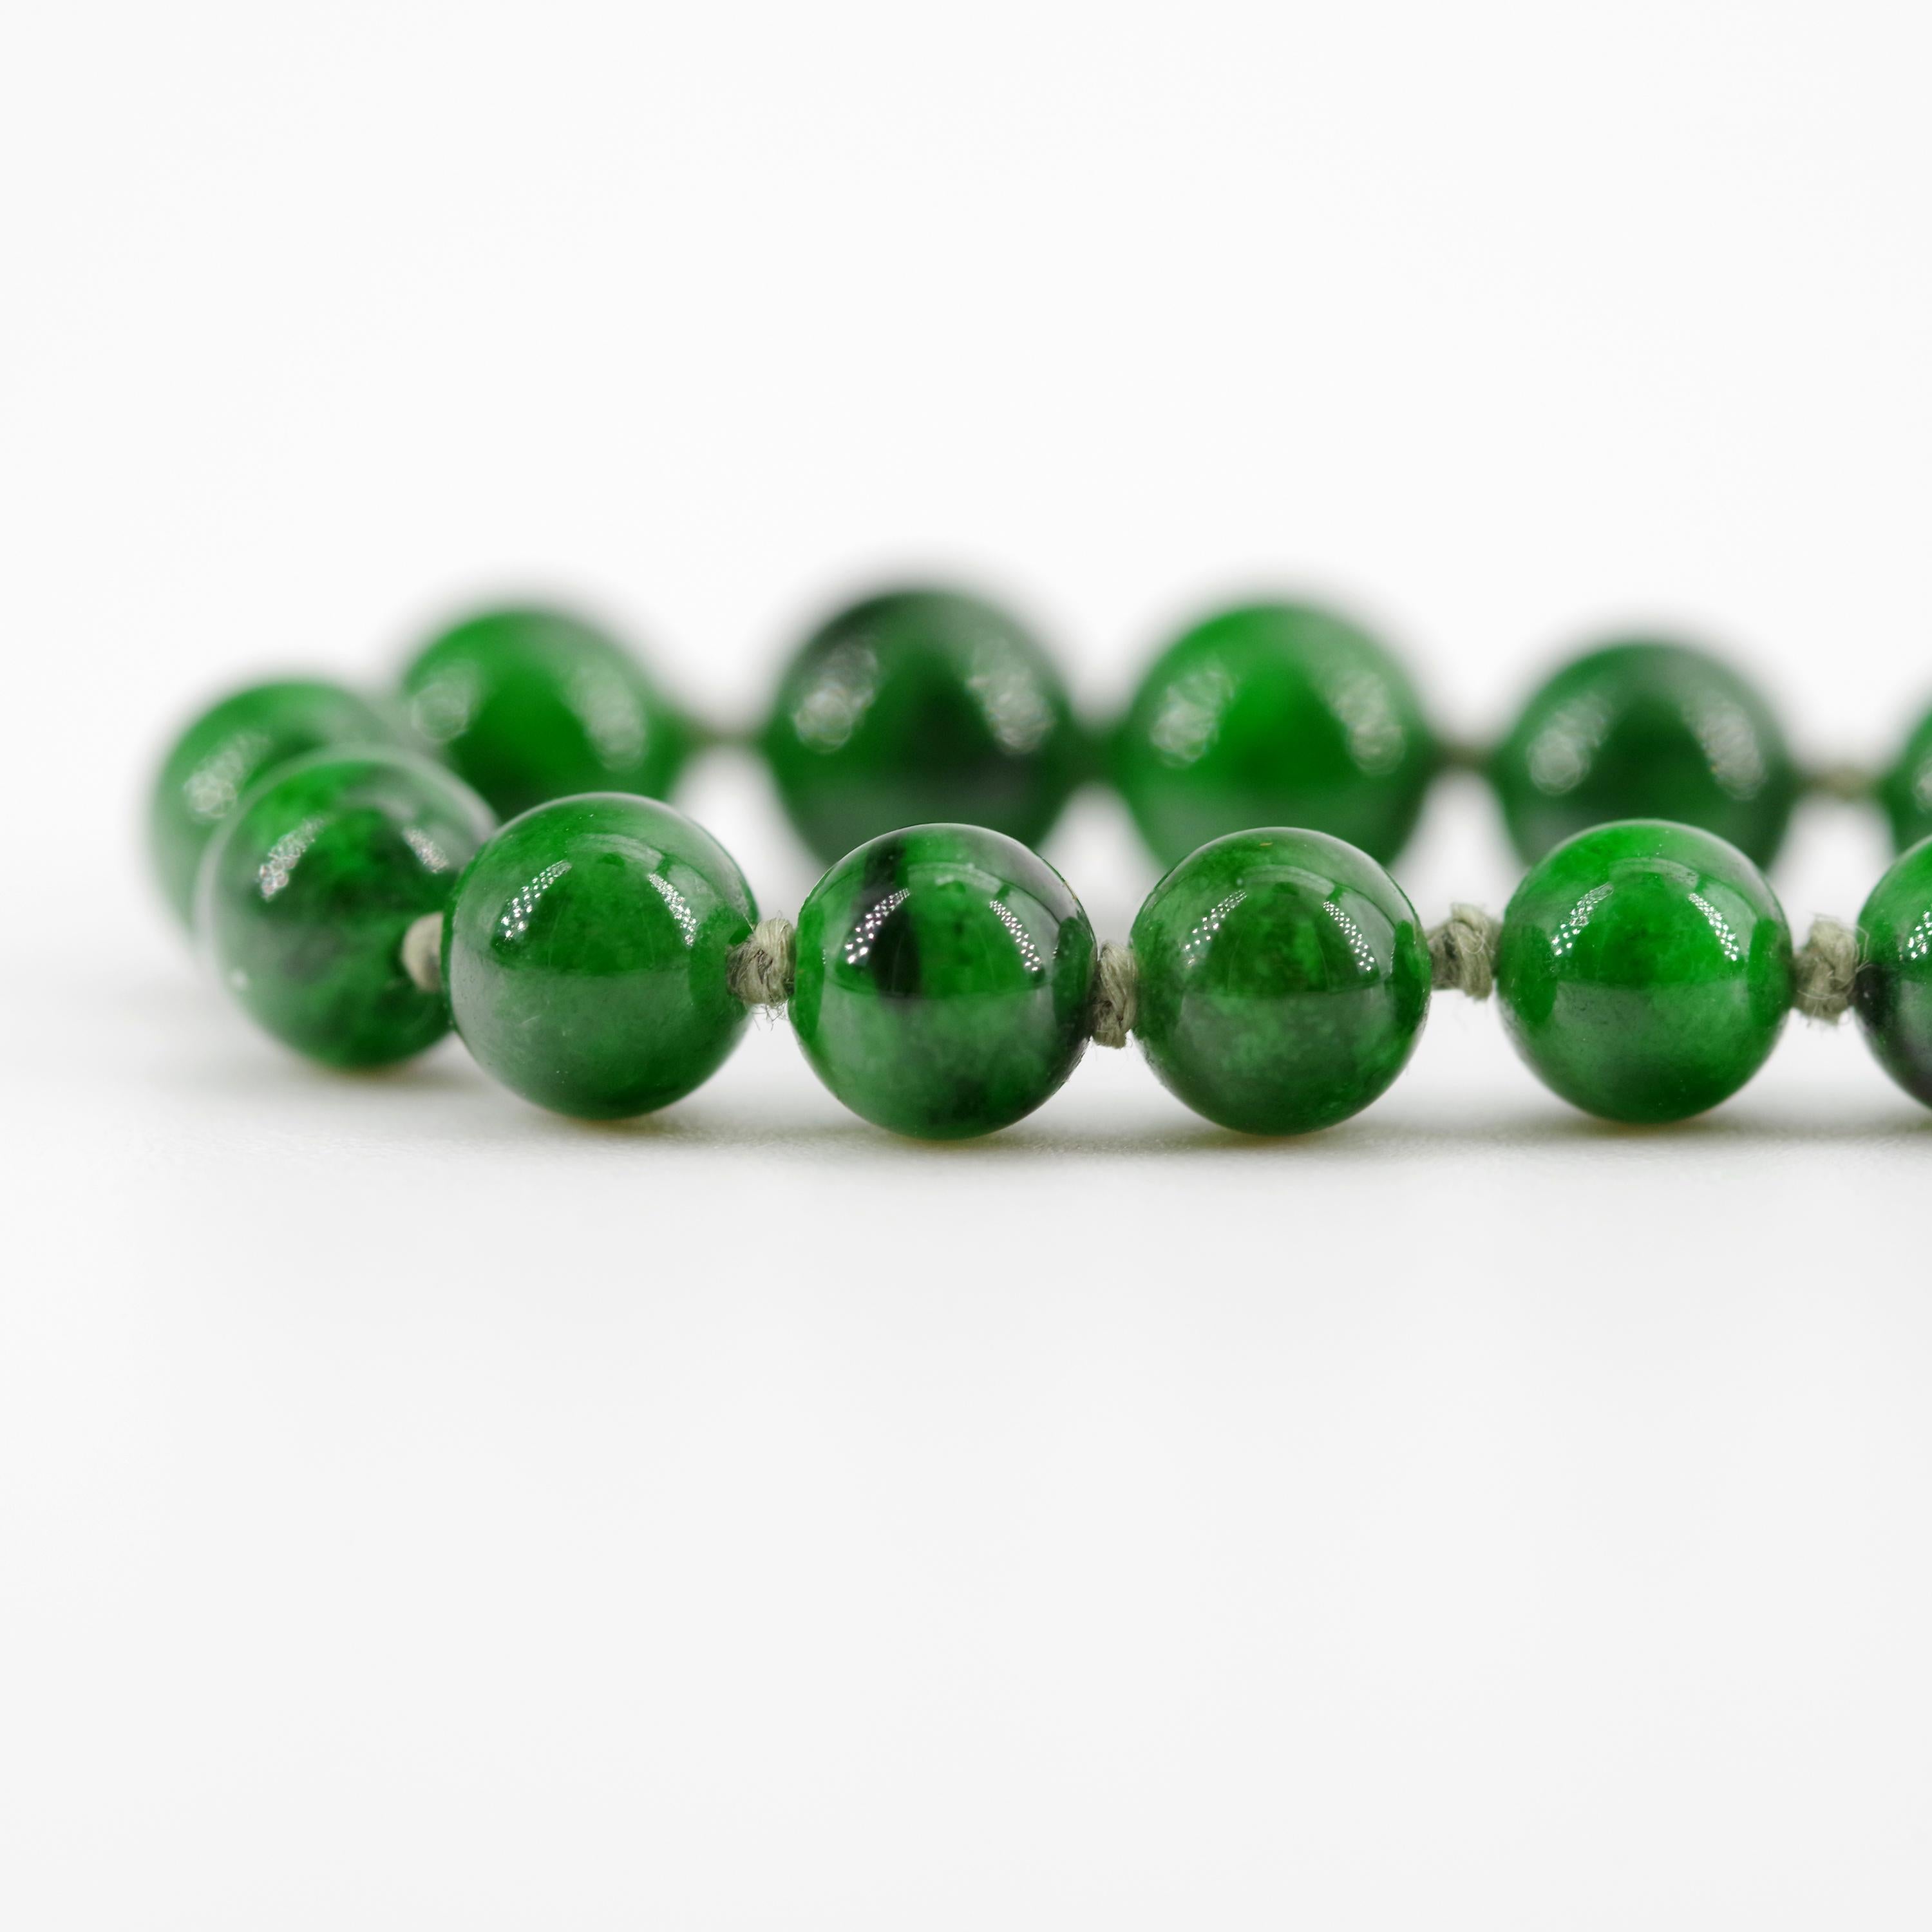 Kosmochlor-Jadeite Jade Beaded Necklace or Bracelet 3